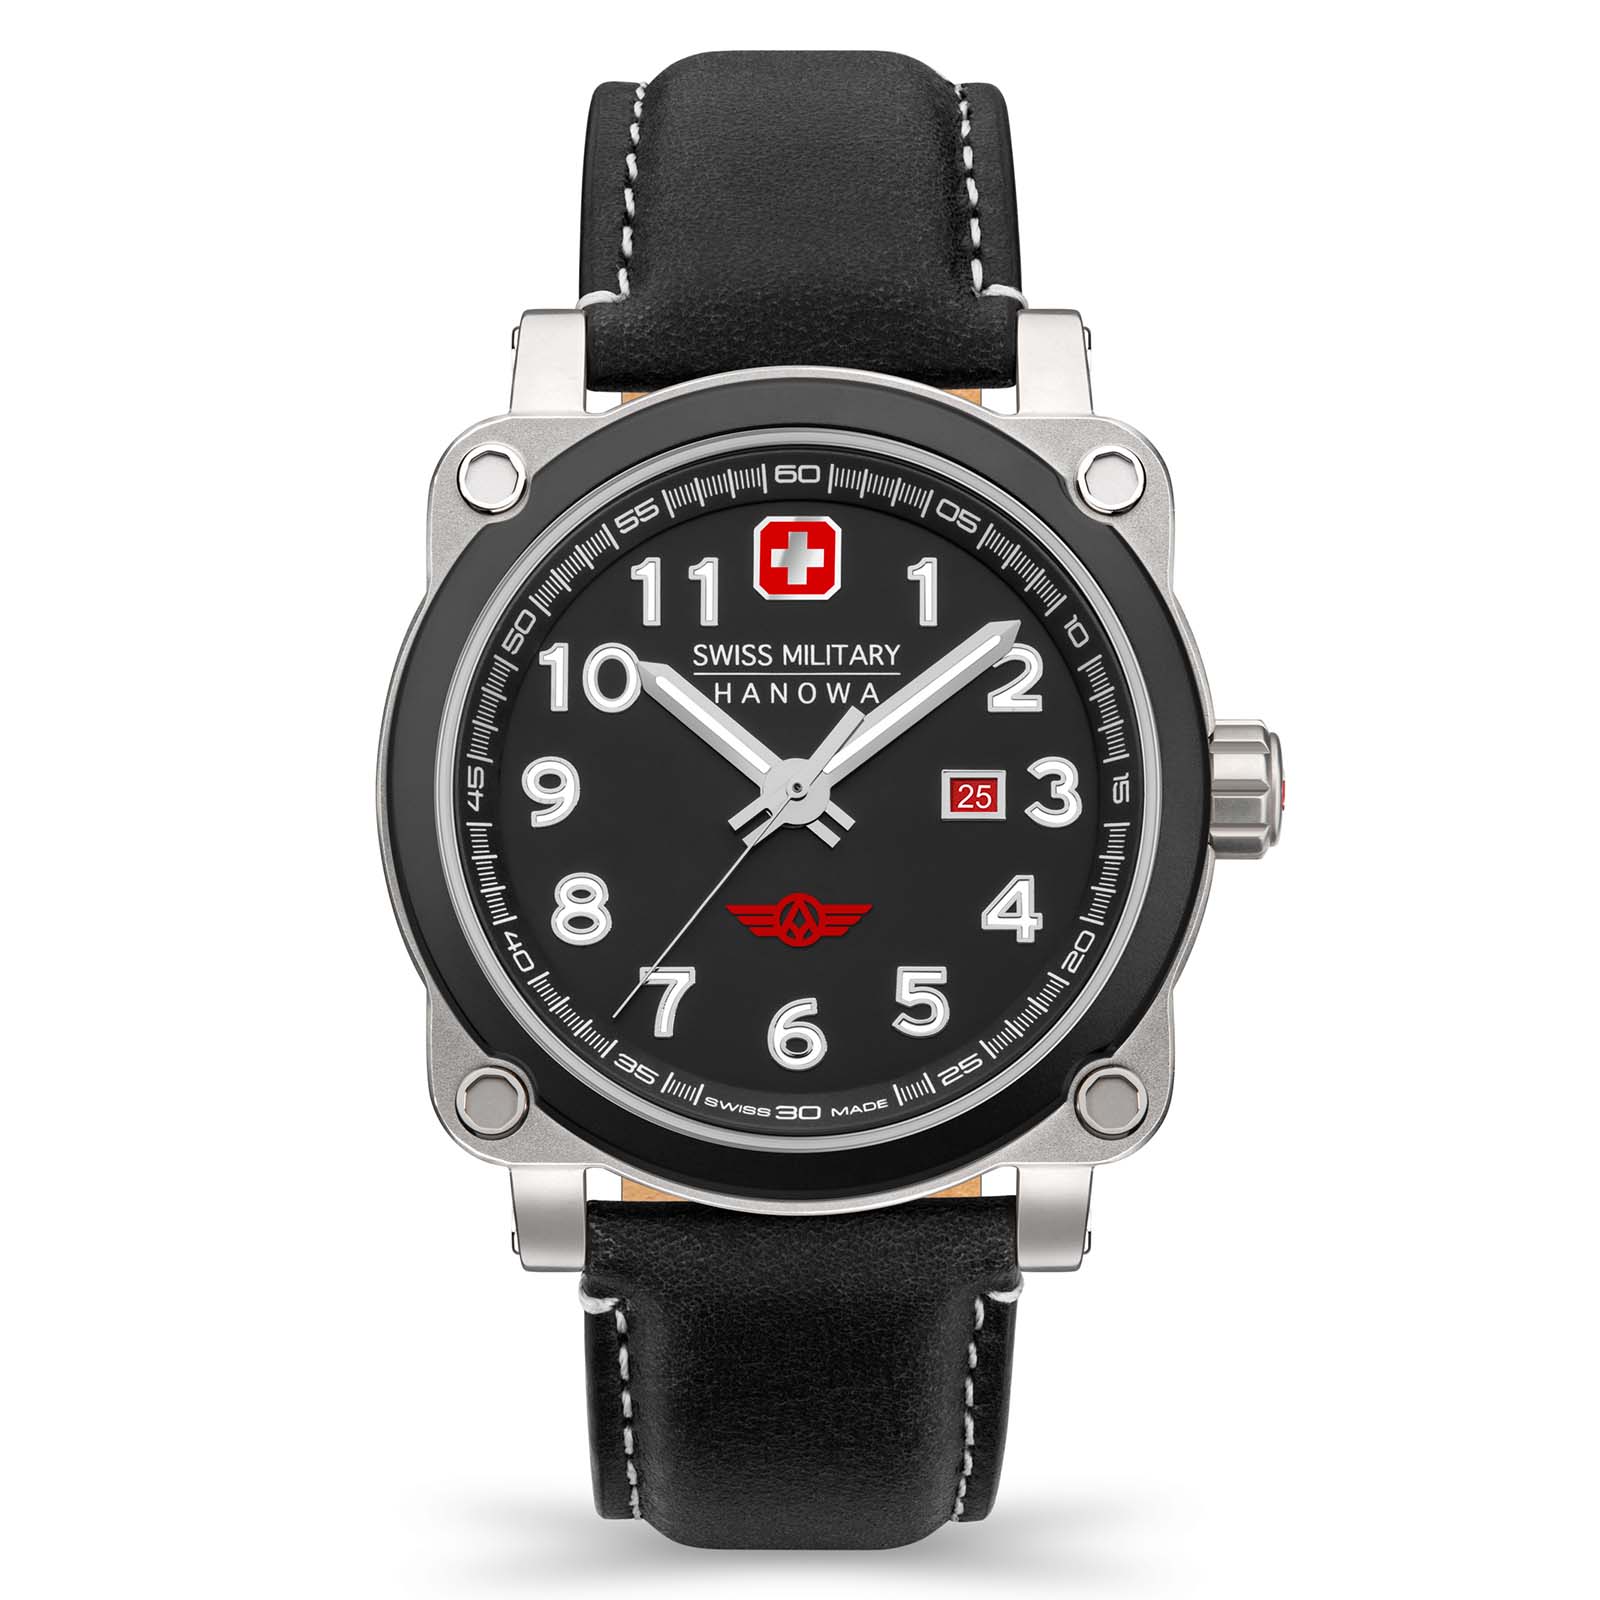 entdecken - online Kollektionen Hanowa-Uhren | Watches Switzerland Preise und Swiss of Military